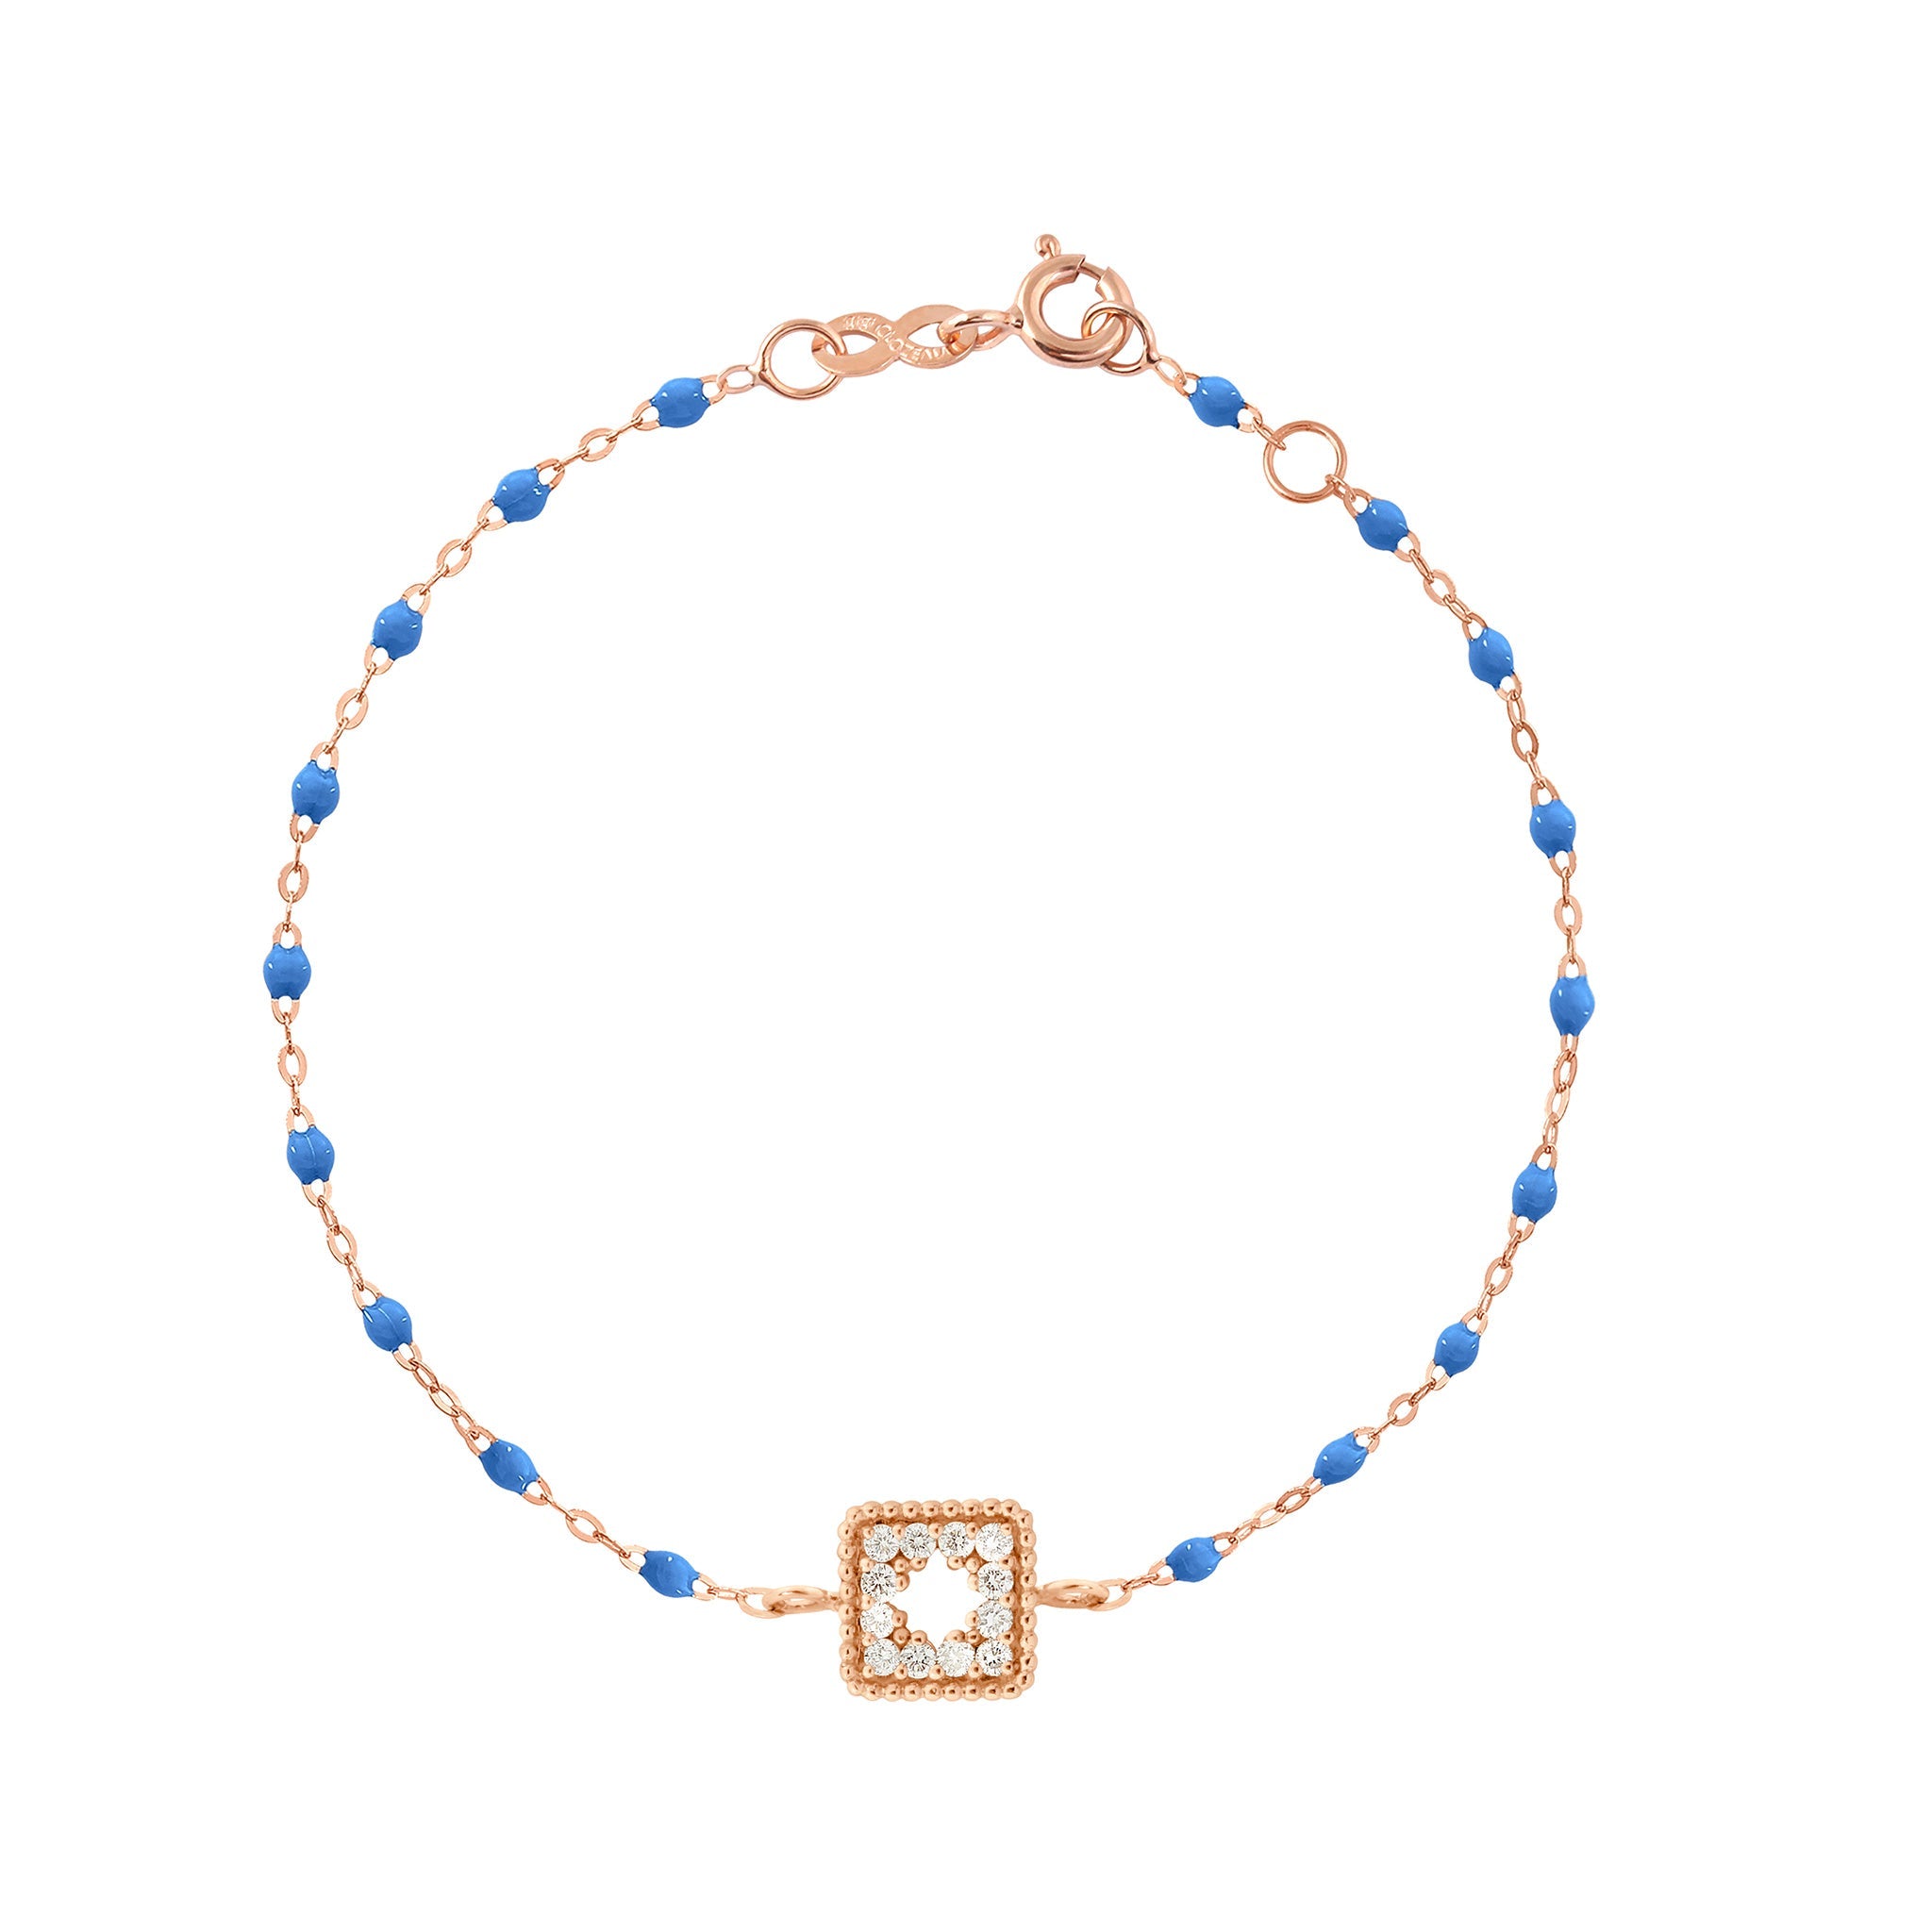 Bracelet bleu fluo Trésor, diamants, or rose, 17 cm  Référence :  b3tr001r0417di -1